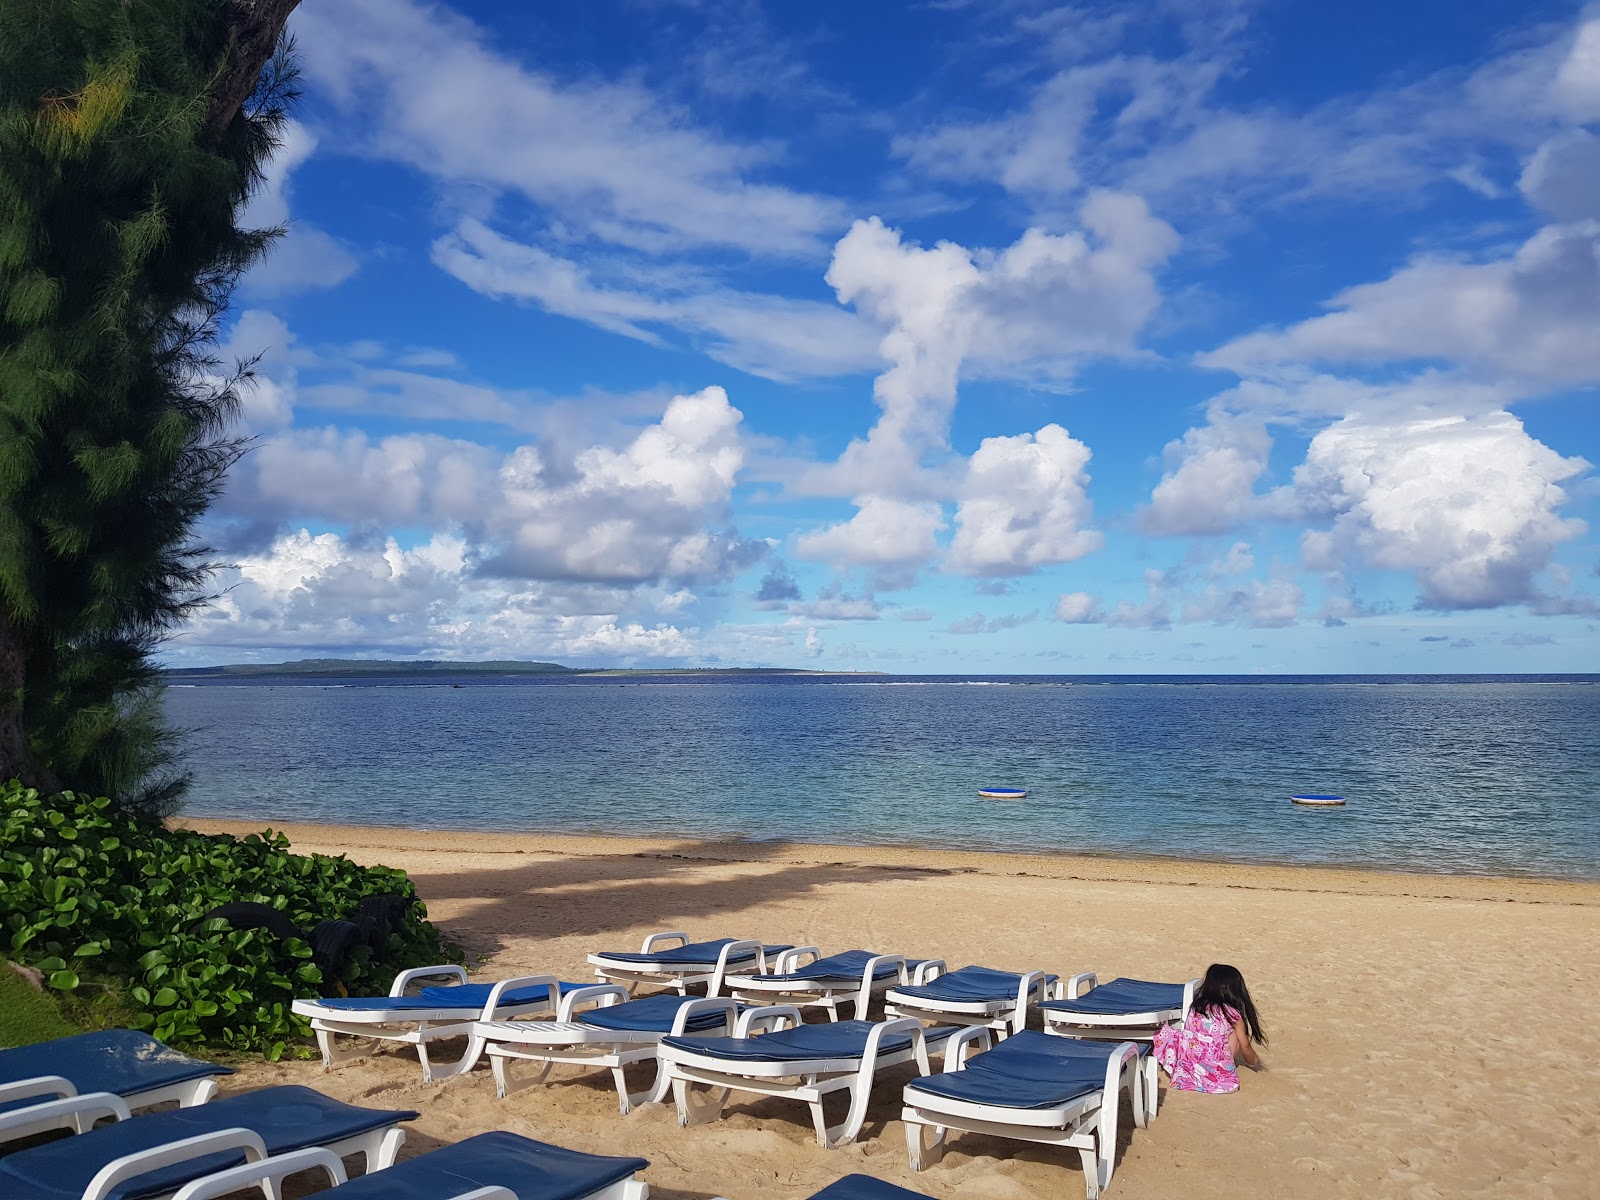 Foto von Pacific islands Club mit langer gerader strand